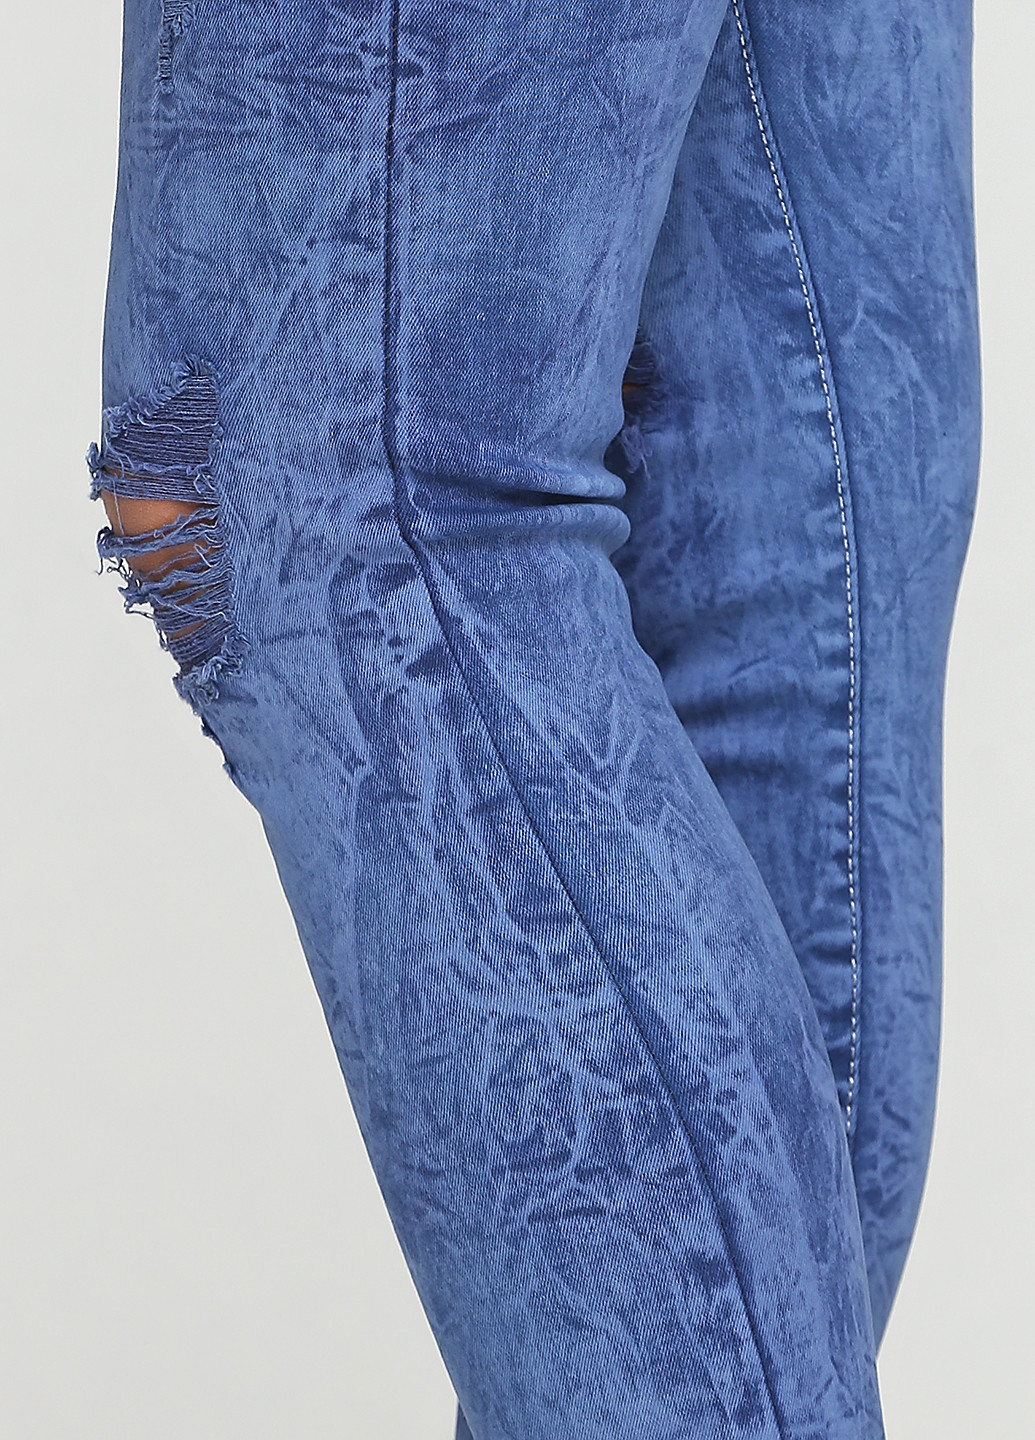 Синие демисезонные скинни джинсы CUTLER